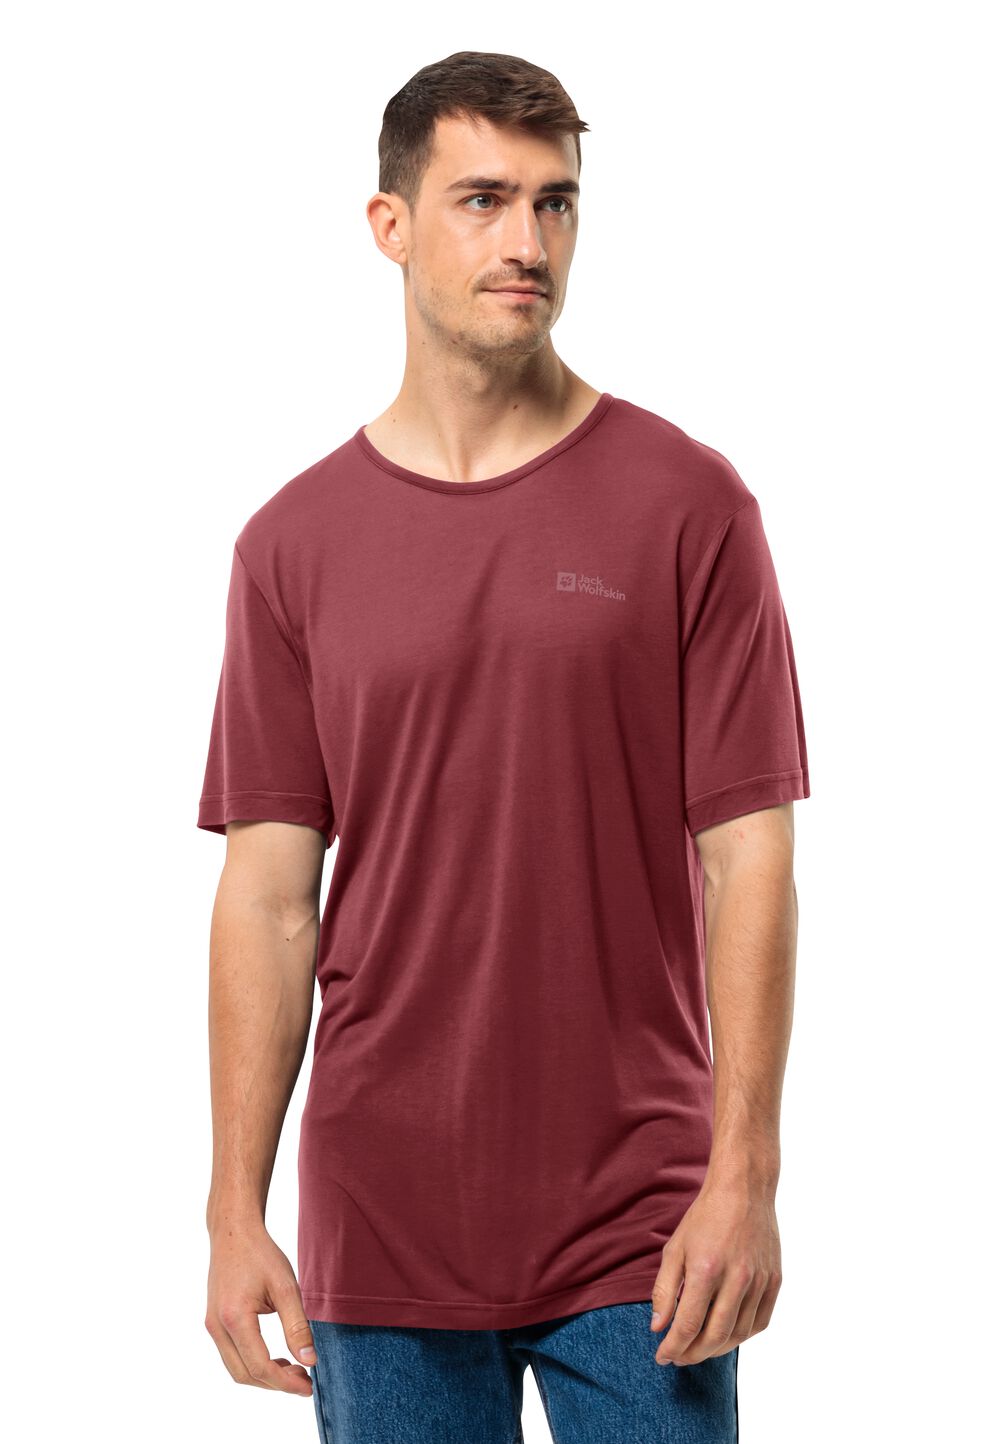 Jack Wolfskin Funktionsshirt Herren Mola T-Shirt Men XL violett deep ruby von Jack Wolfskin